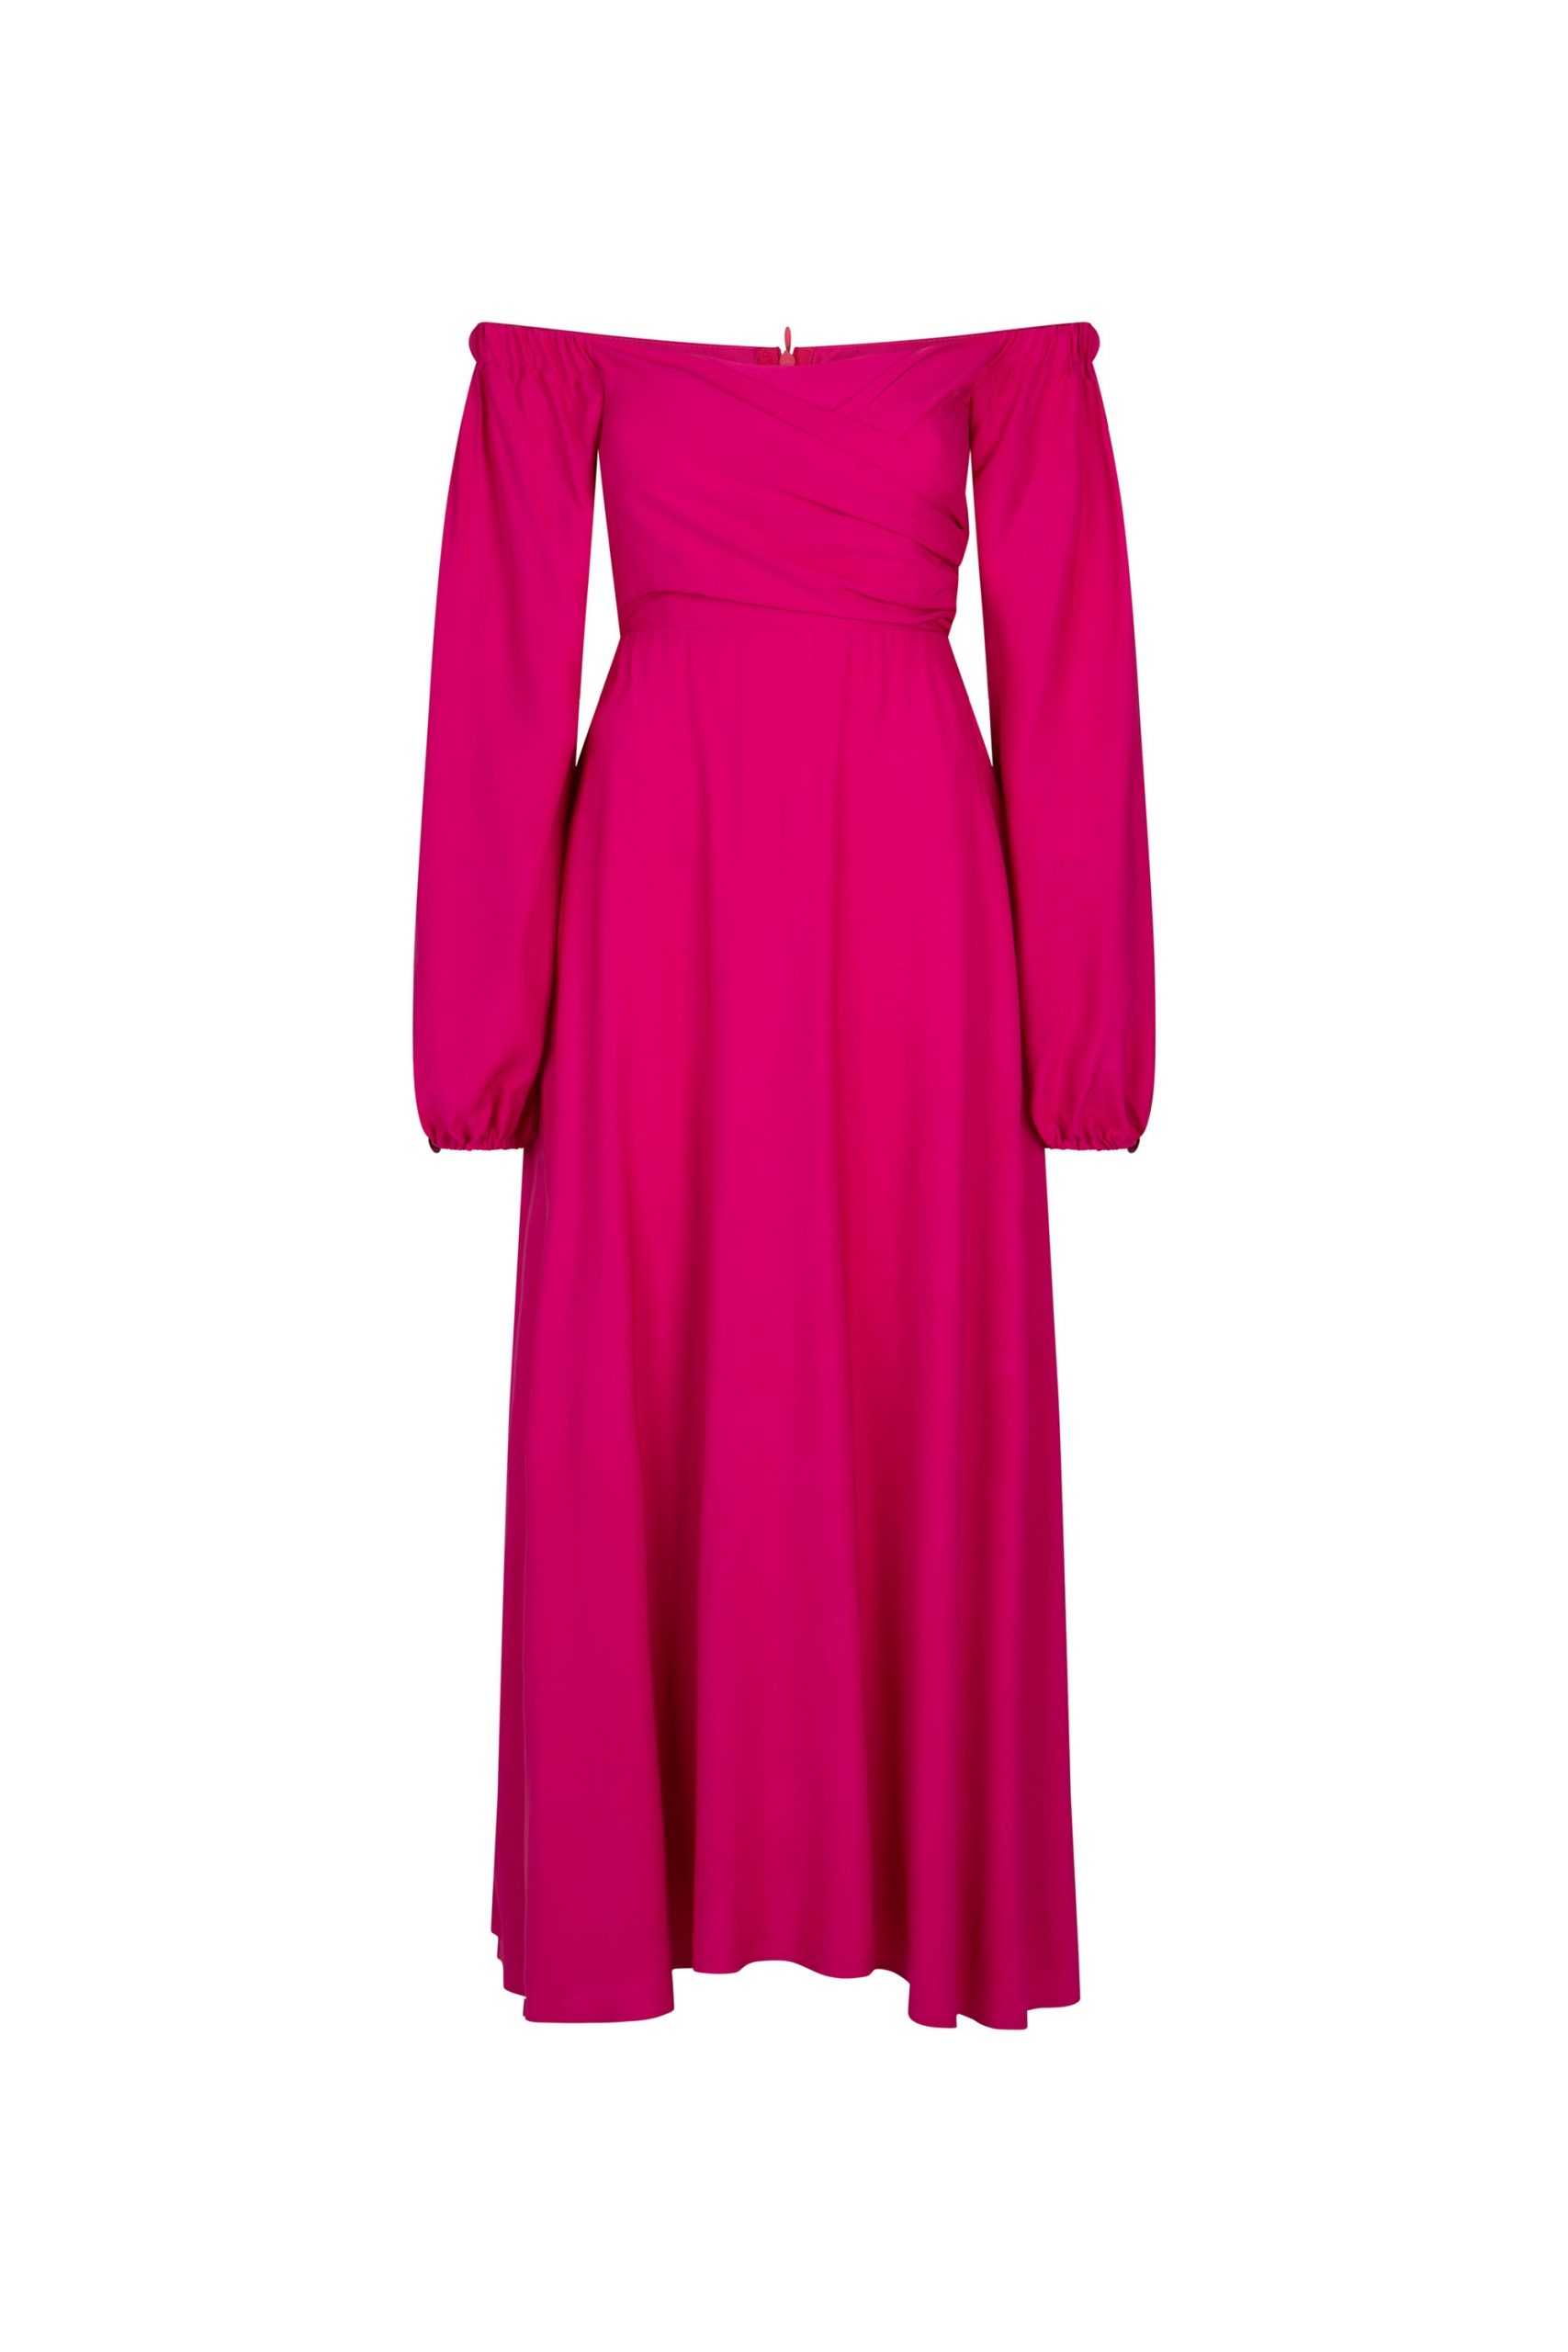 Długa różowa sukienka z odkrytymi ramionami